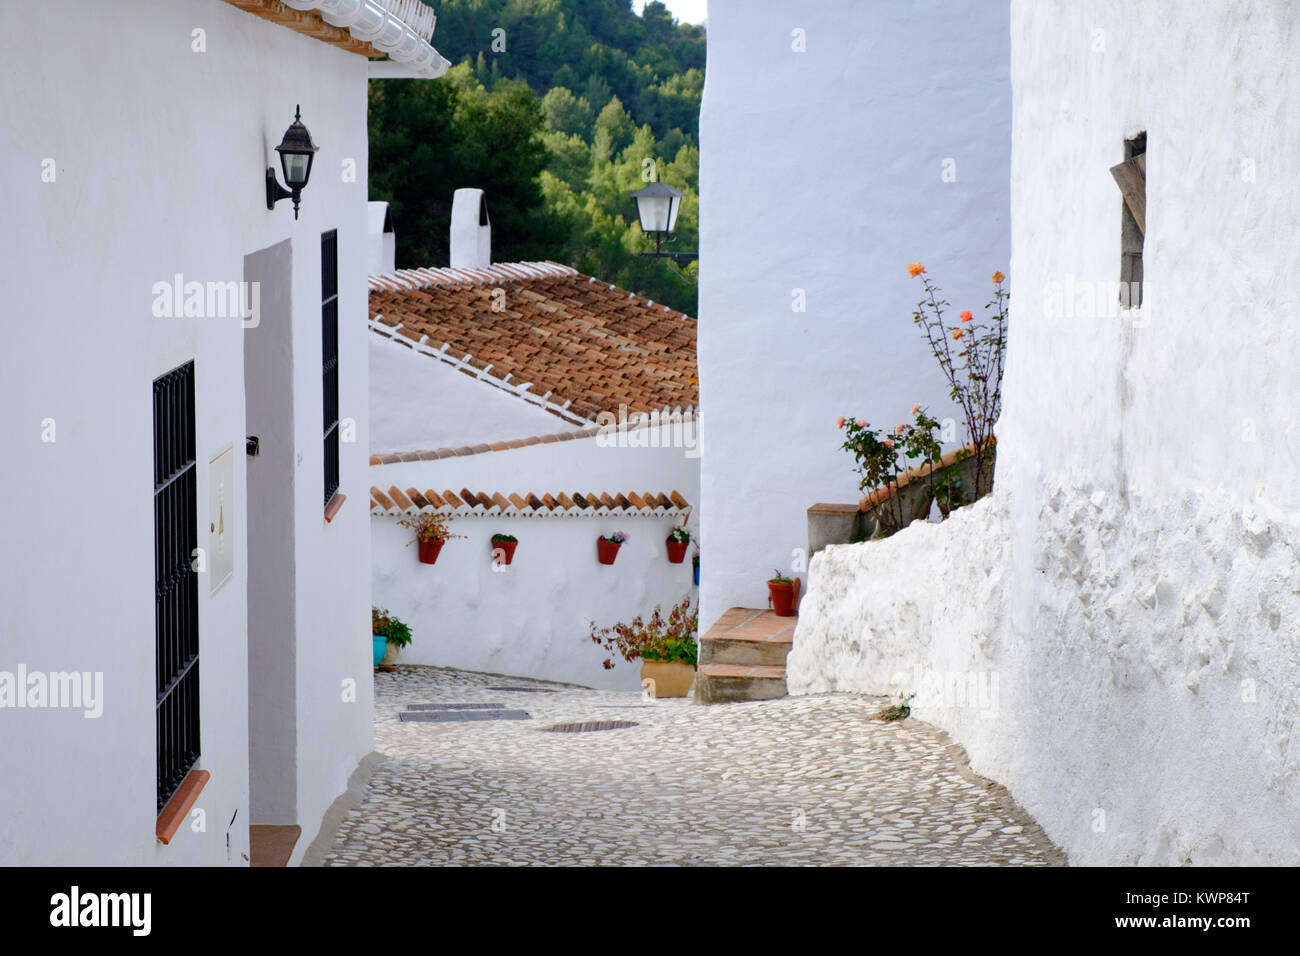 El Acebuchal, un villaggio bianco o peublo blanco, nella regione dell'Andalusia a est di Malaga. Una volta abbandonato il borgo è stato recentemente restaurato. Foto Stock